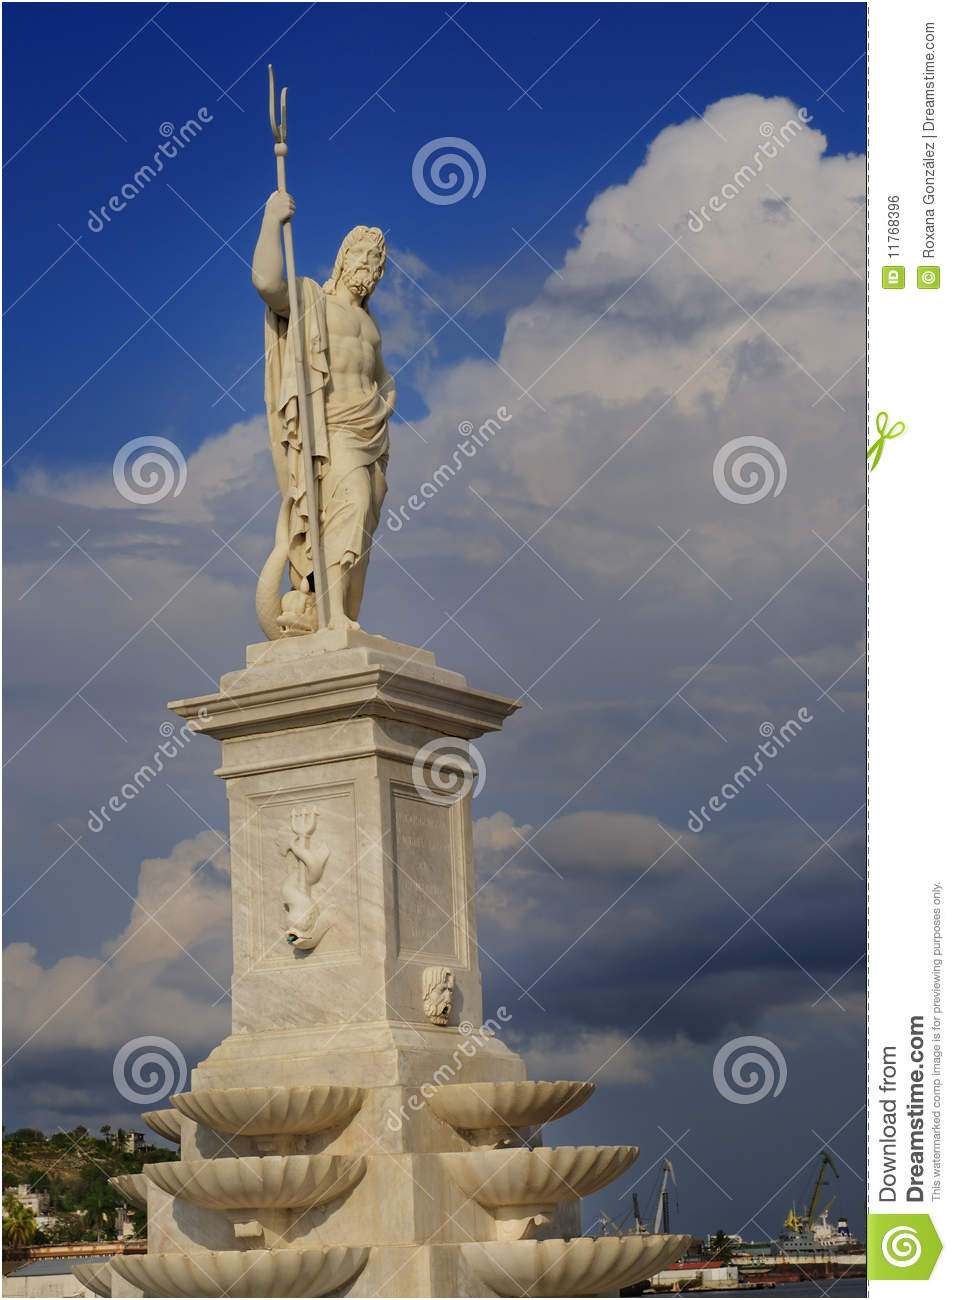 image libre de droits statue d un u grec poseidon au partiment de la havane image